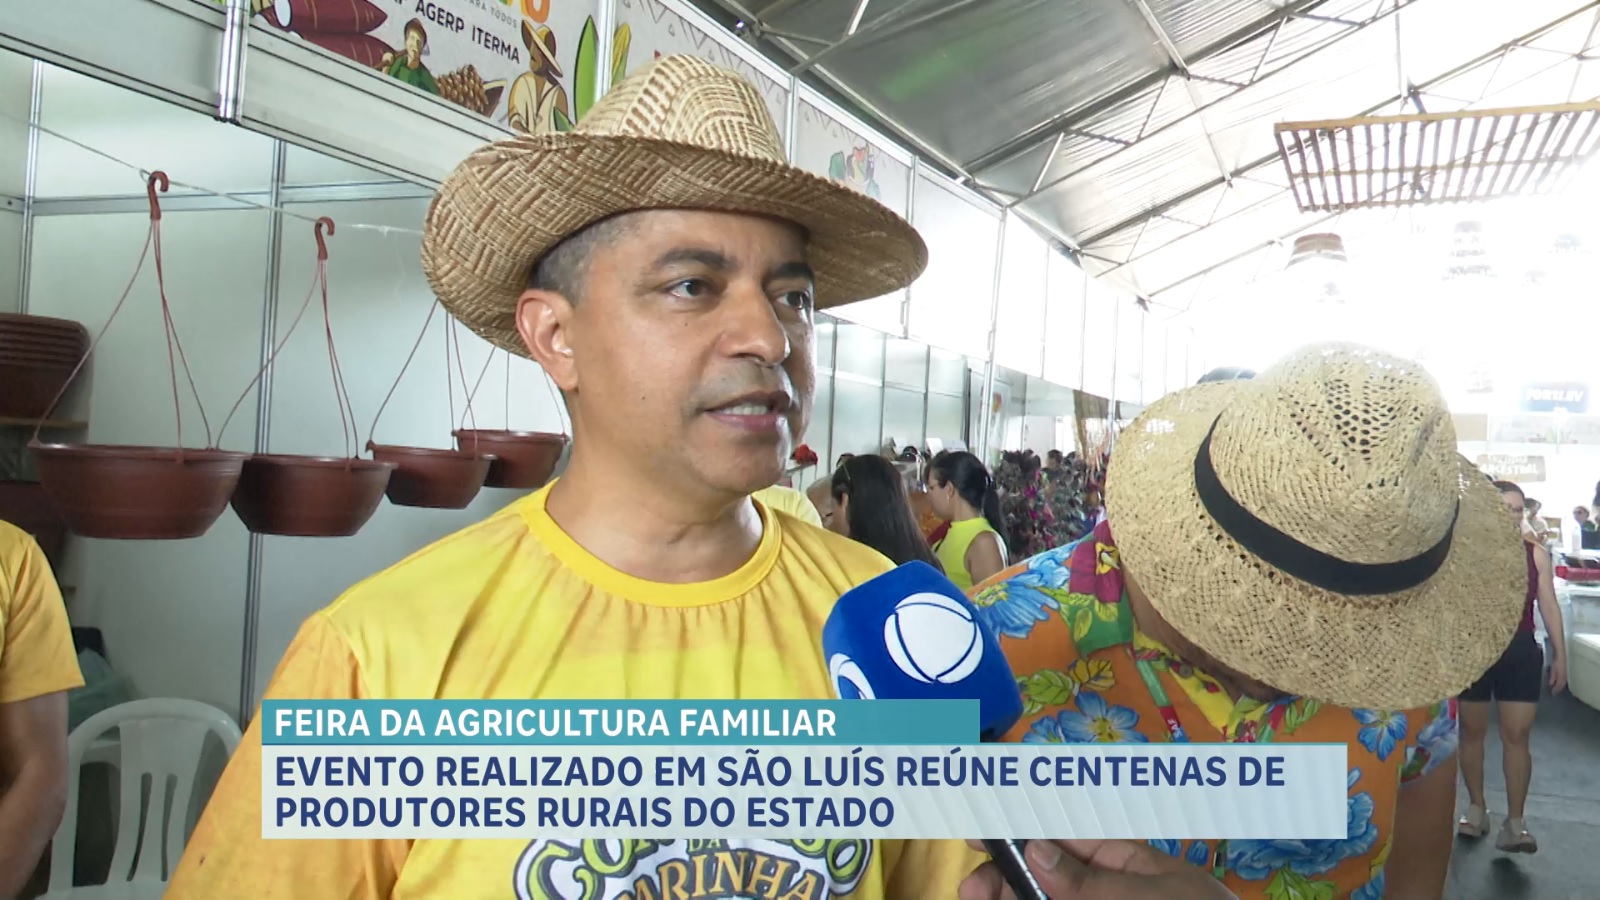 Chico Cesar será atração na Feira da Agricultura Familiar (Femaf